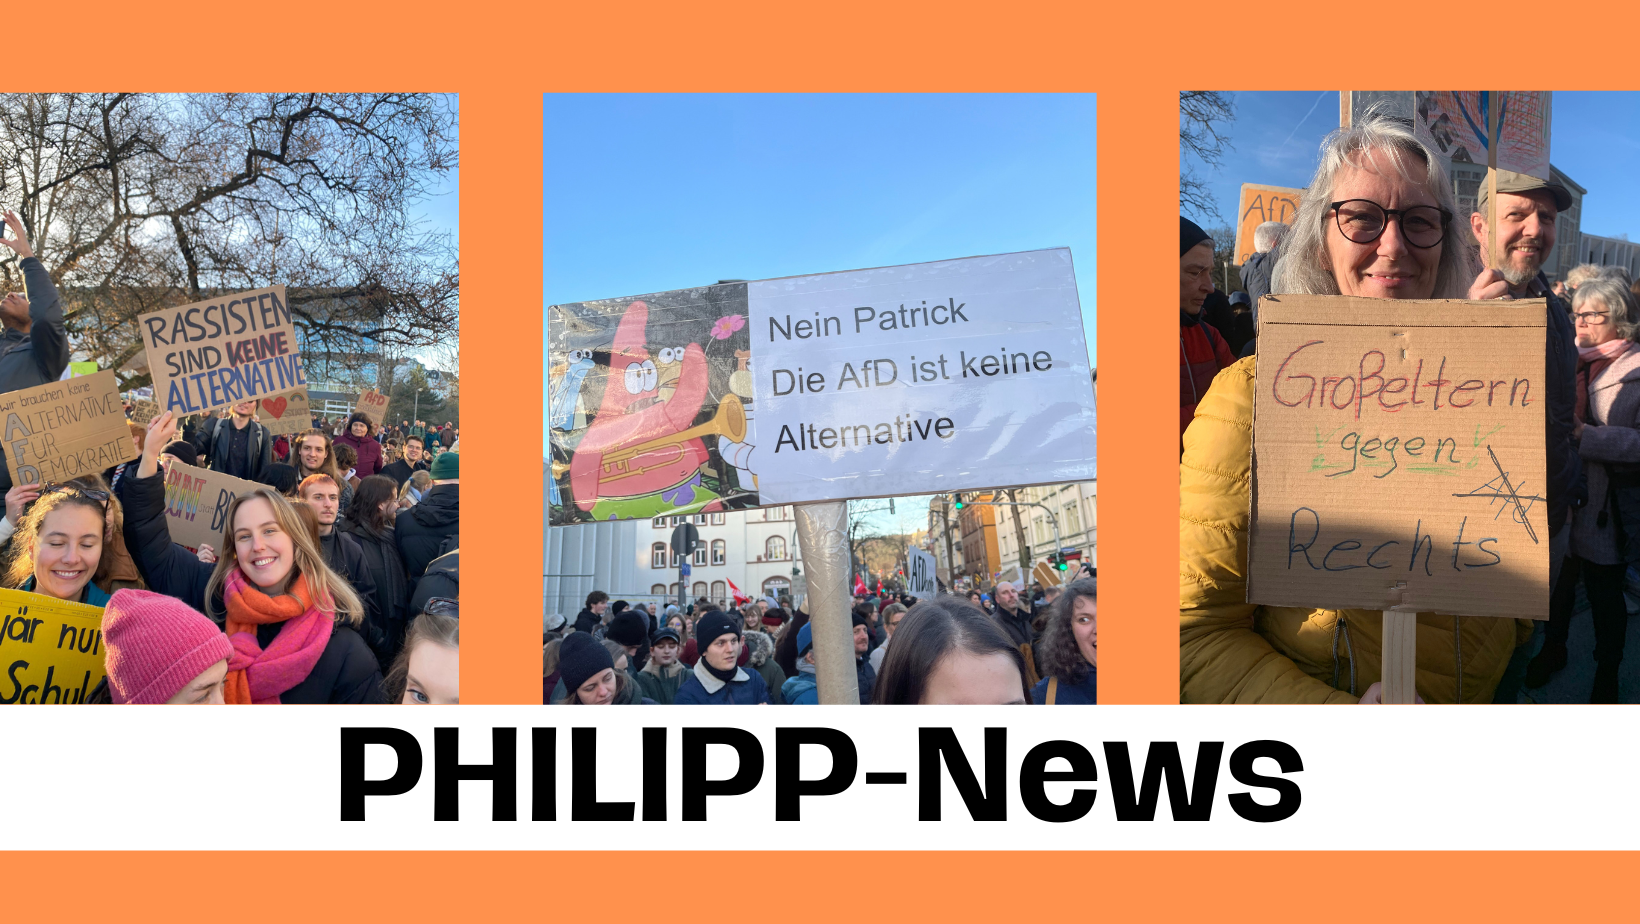 PHILIPP-News: „Wir wollen in unserer Demokratie alt werden“ – Demo gegen Rechts